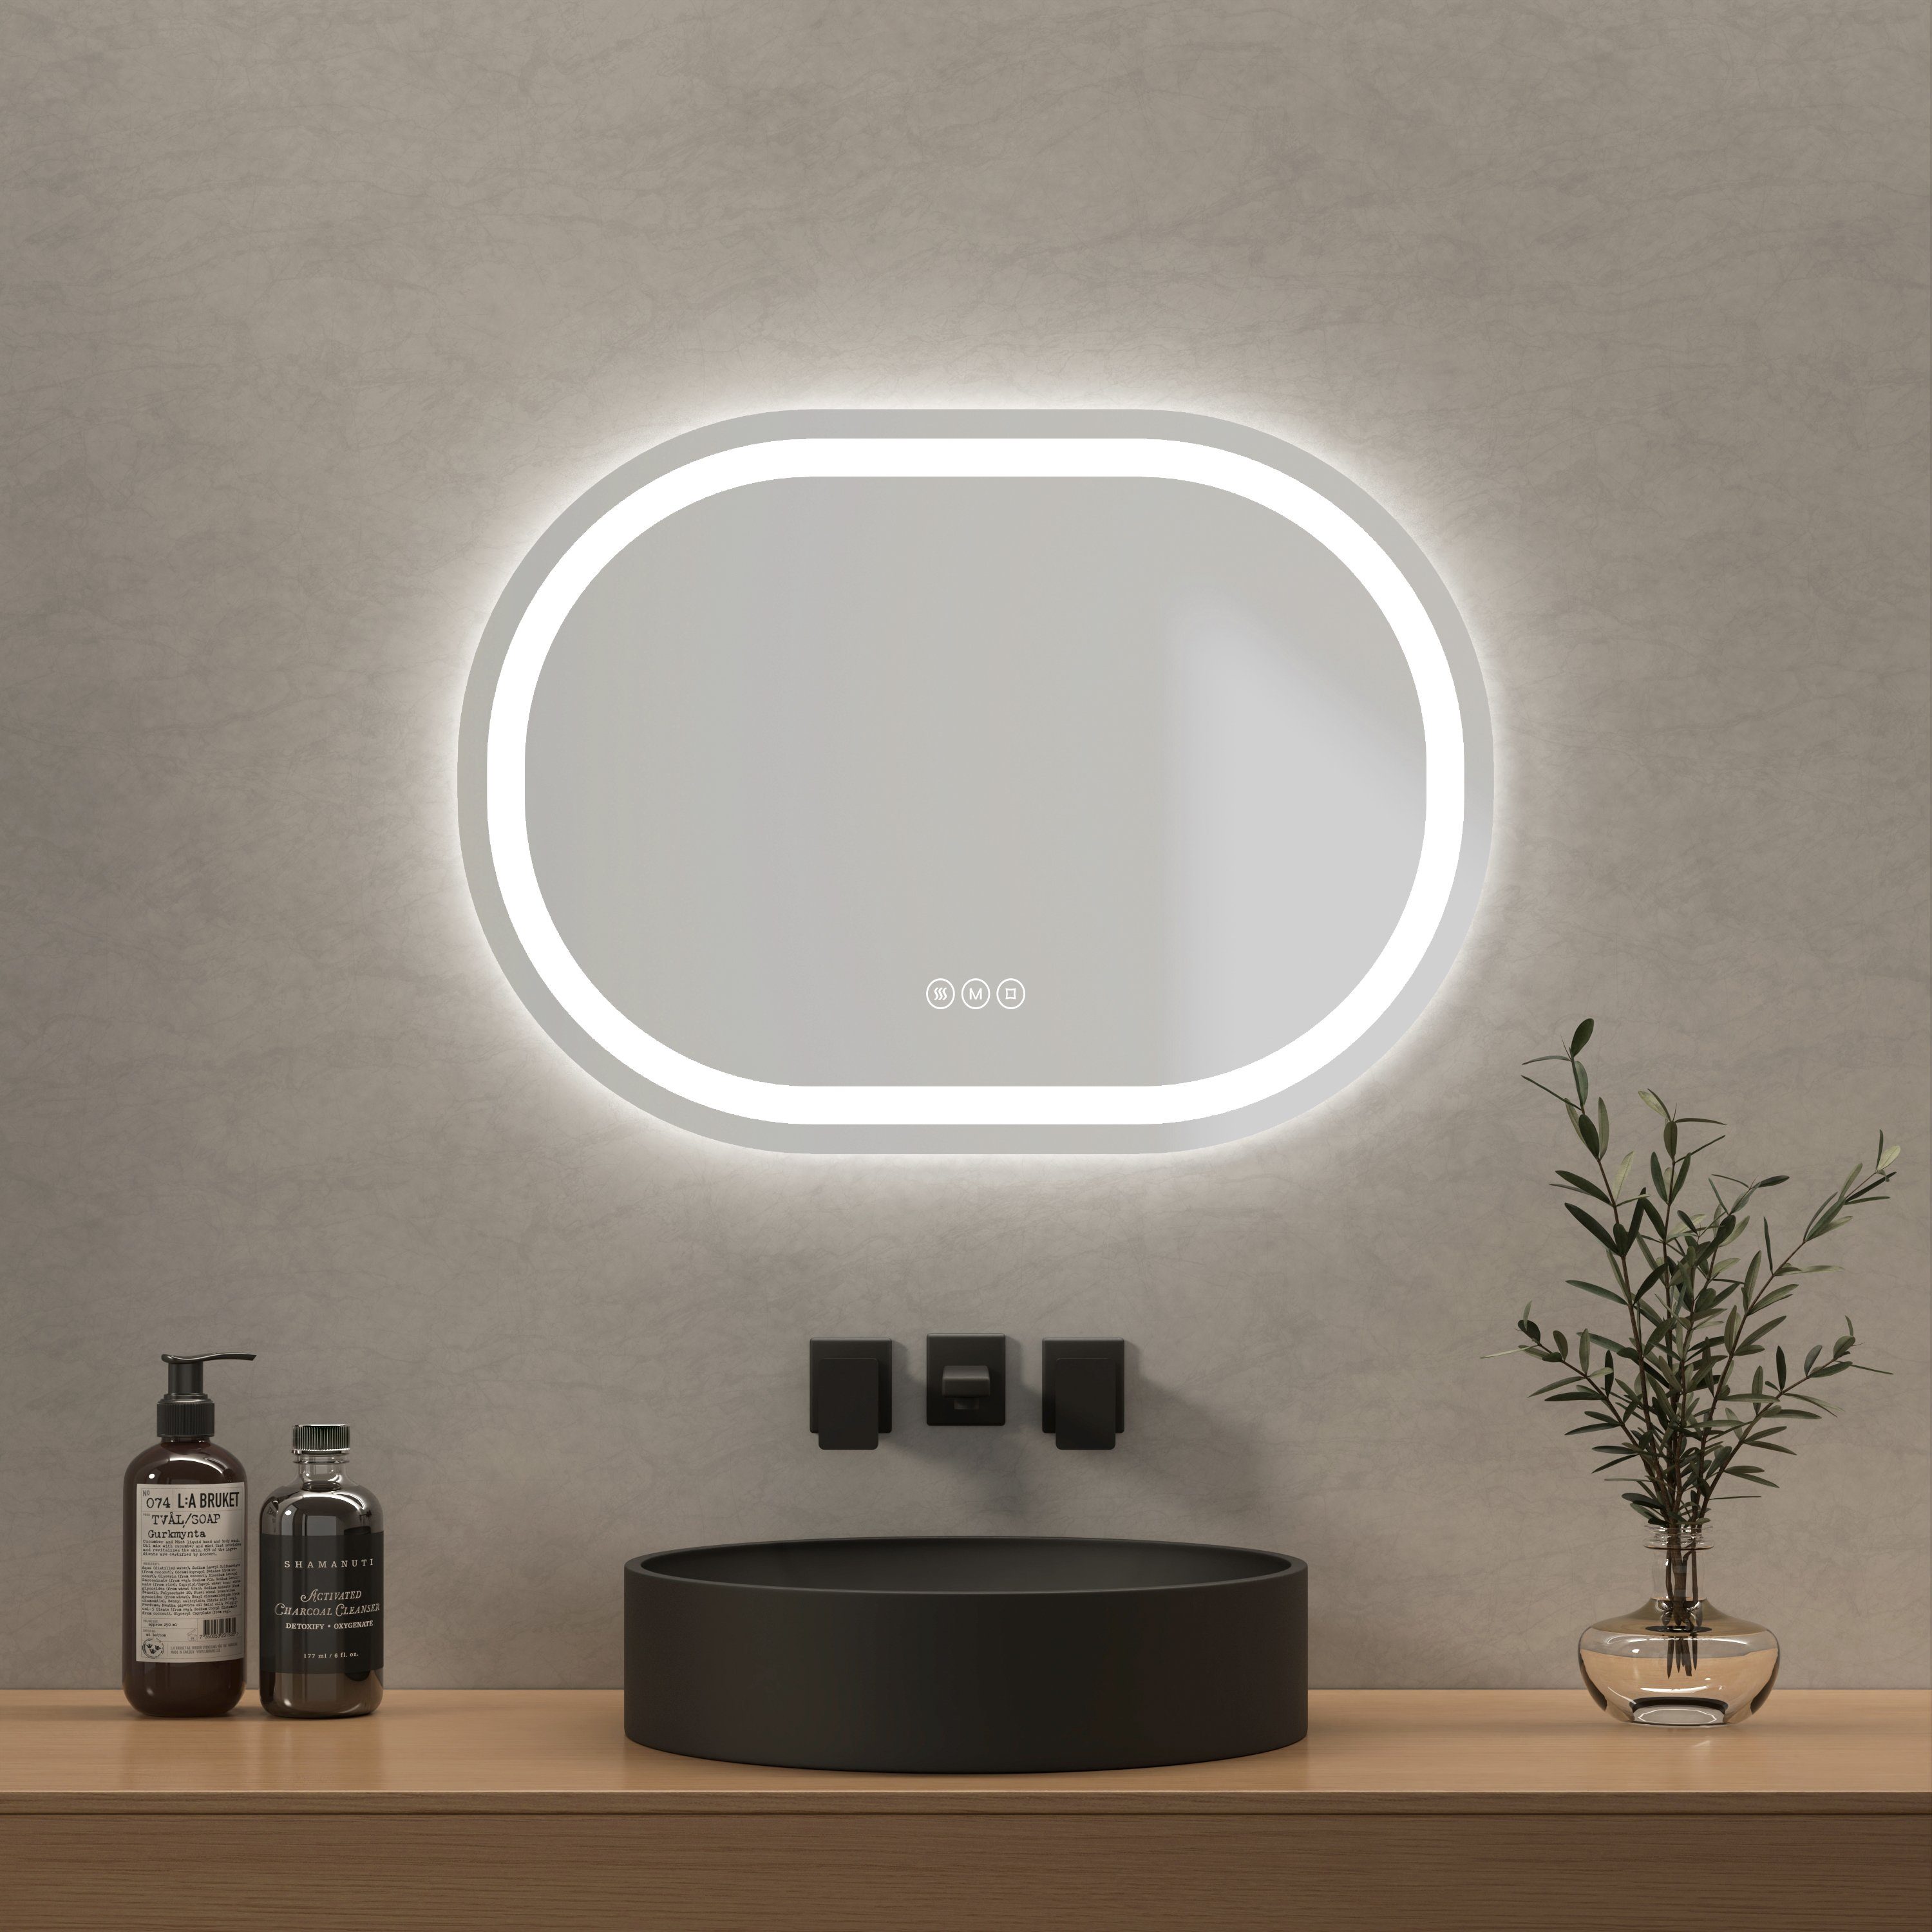 EMKE Badspiegel Oval Badspiegel mit Beleuchtung LED Badezimmerspiegel, mit Touchschalter, 3 Lichtfarben dimmbar, Beschlagfrei